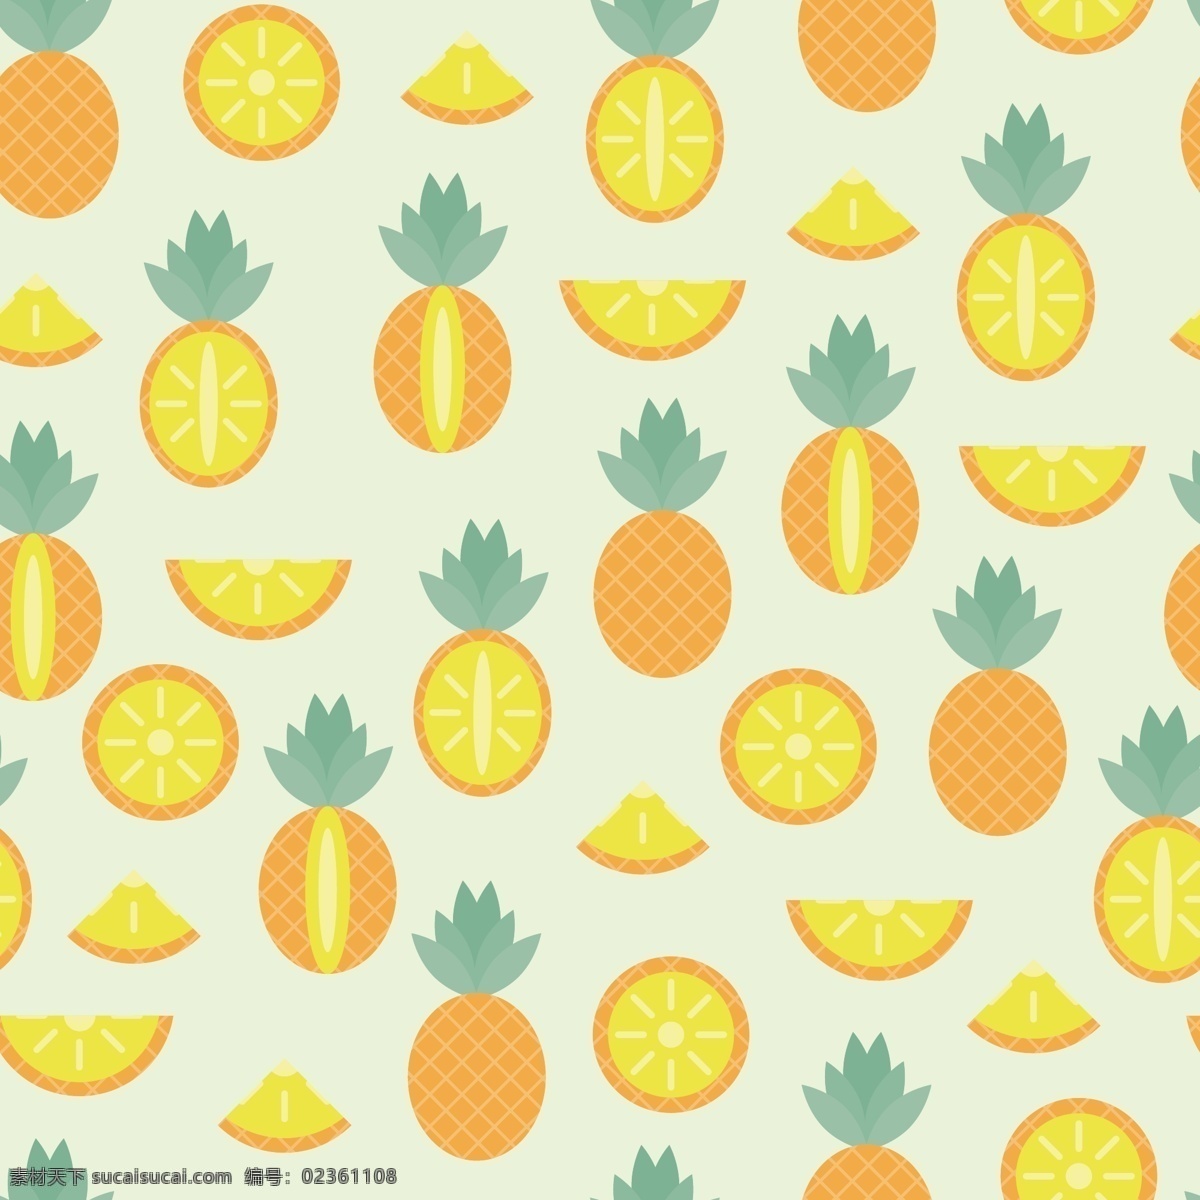 菠萝图案 夏威夷 菠萝 食品 水果 背景 模式 重复 黄色 绿色